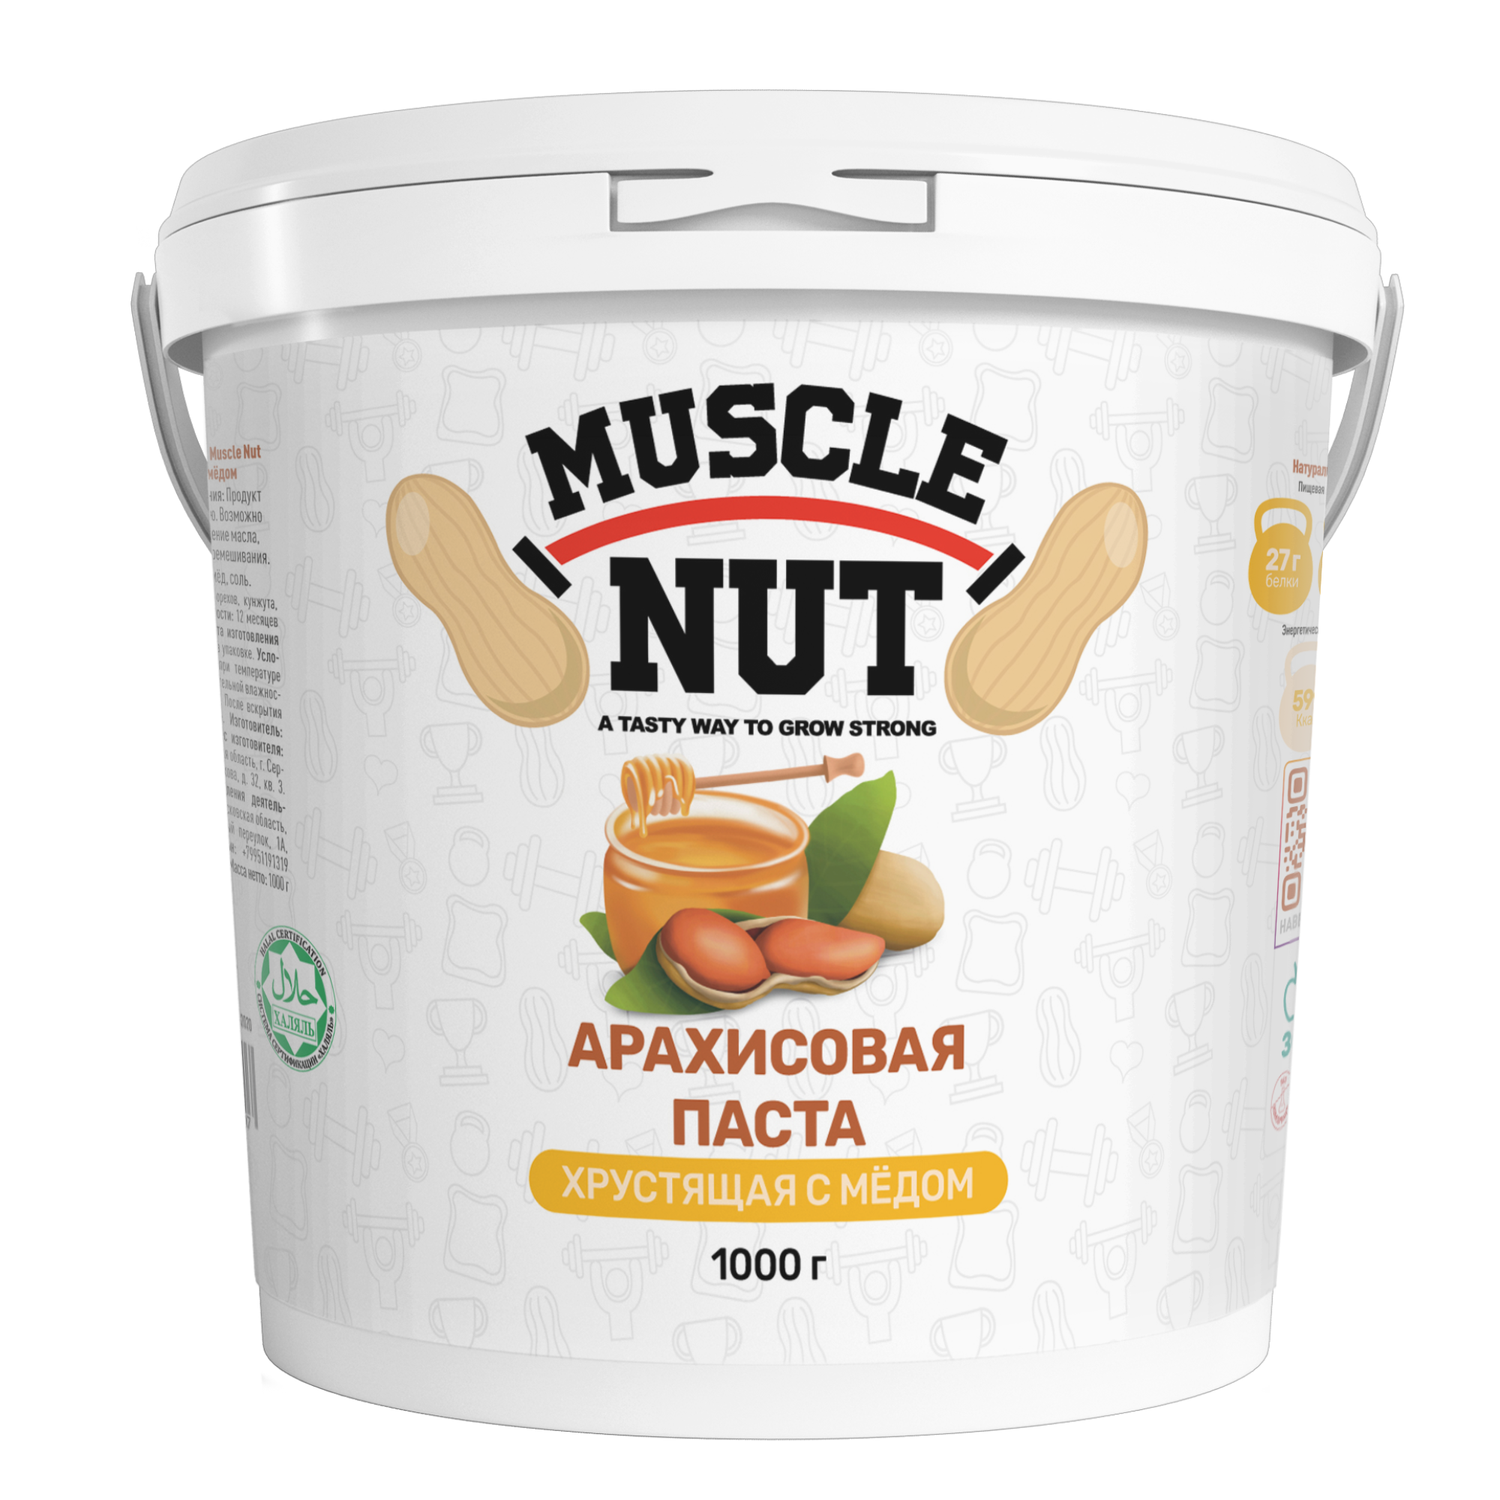 Арахисовая паста Muscle Nut хрустящая с мёдом без сахара натуральная высокобелковая 1000 г - фото 1